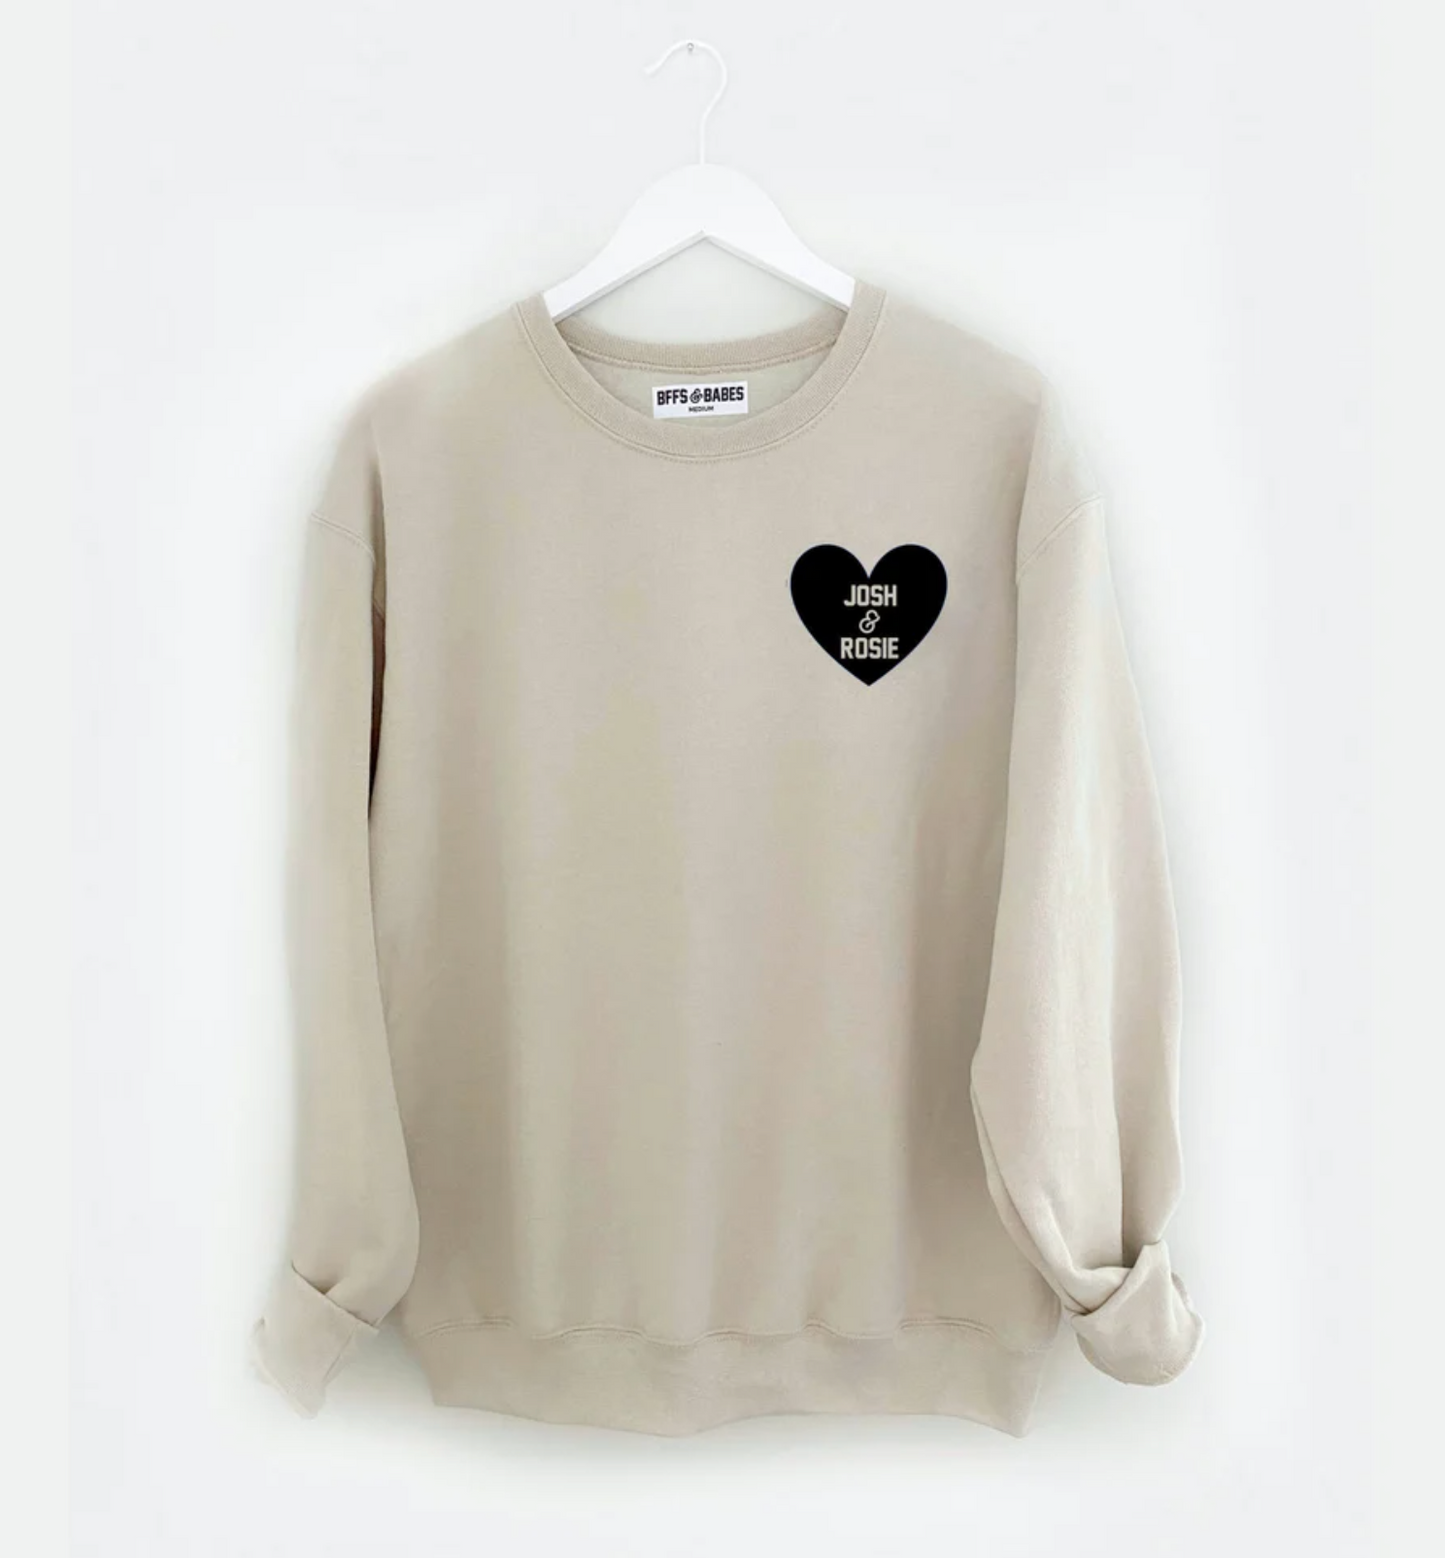 HEART U MOST ♡ beige personalizable sweatshirt